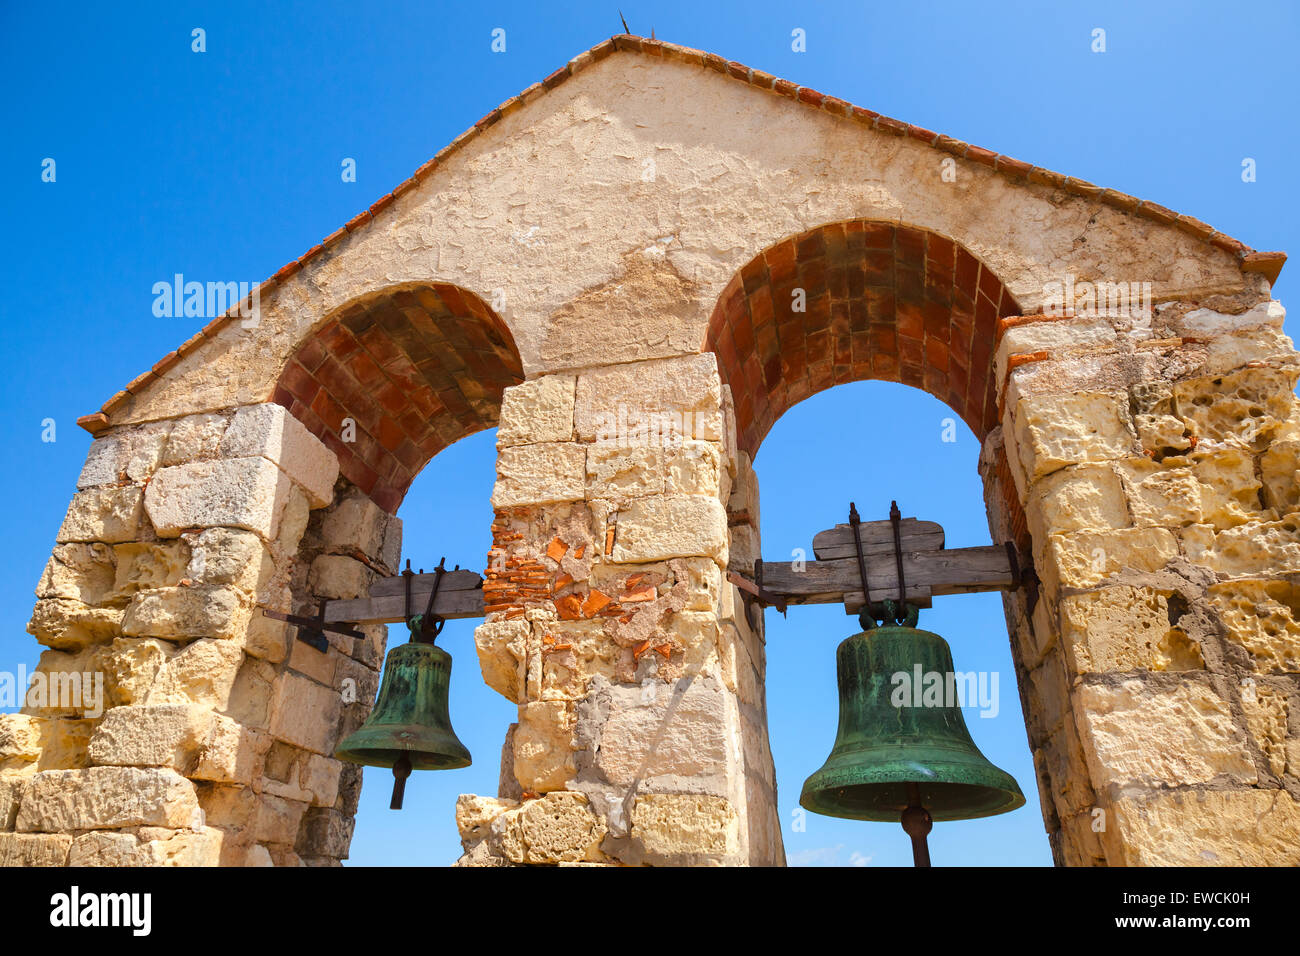 Mittelalterliche steinerne Burg in der Stadt von Calafell, Spanien. Zwei Glocken hängen in Bögen über blauer Himmelshintergrund Stockfoto